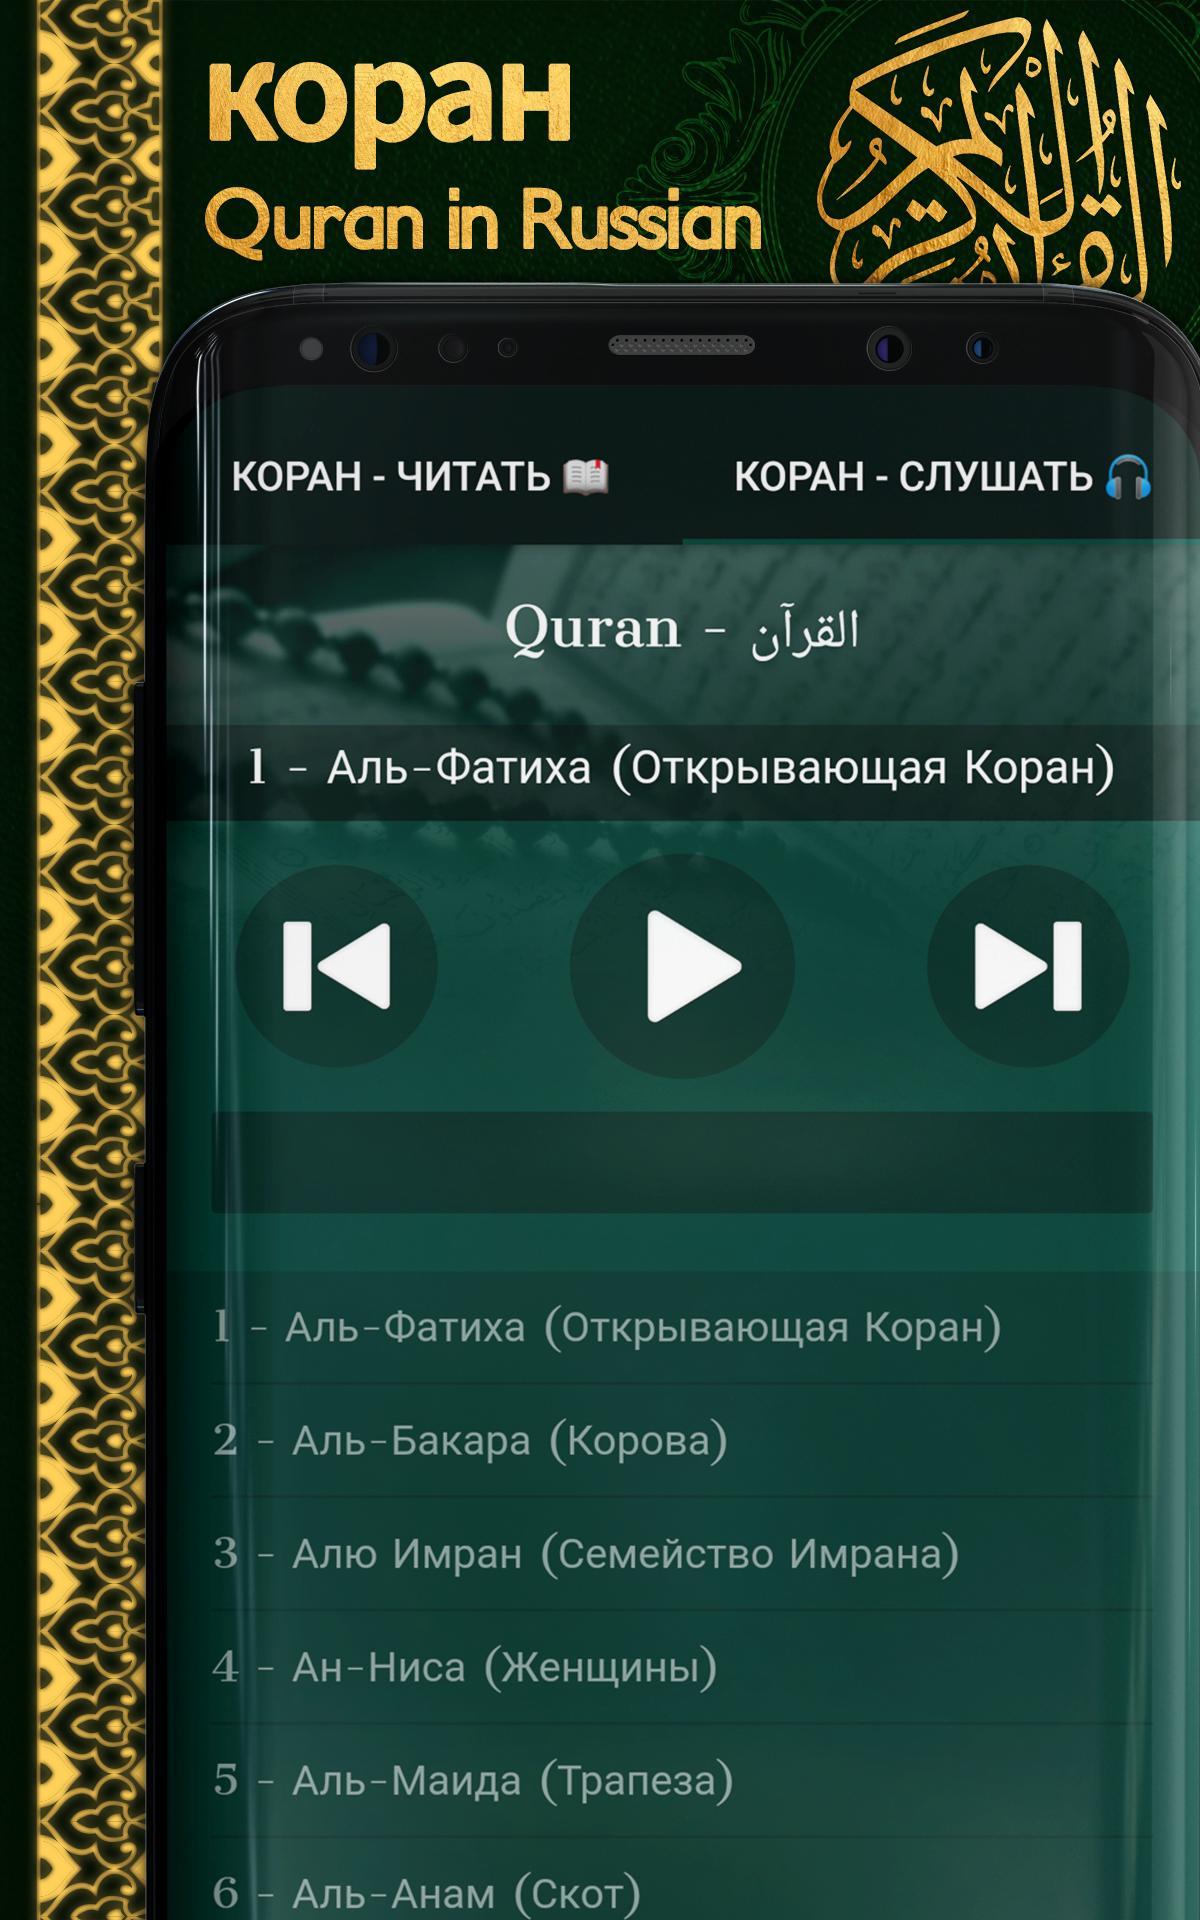 Слушать коран на арабском с русским переводом. Аудио Коран. Приложение Коран. Коран на узбекском языке. Программа Коран на русскому языку.